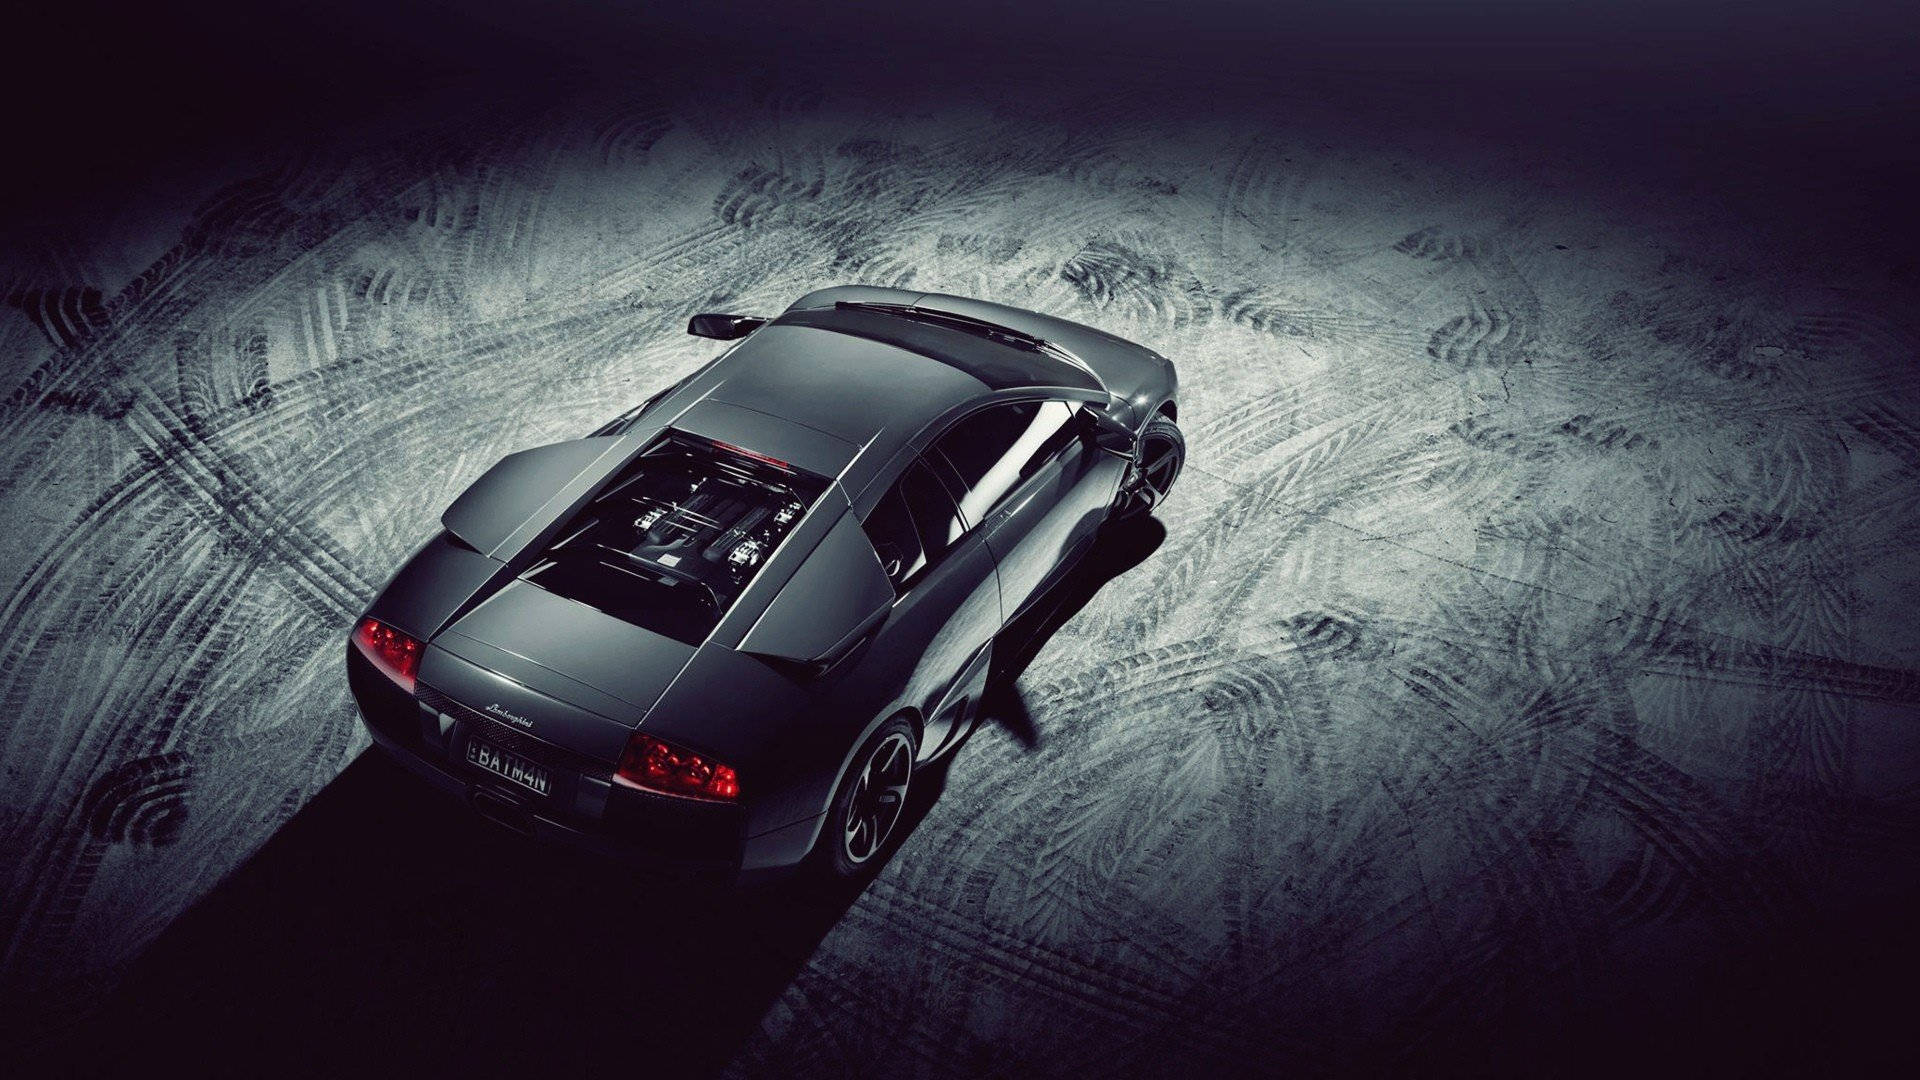 Black Lamborghini Skid Marks Wallpaper